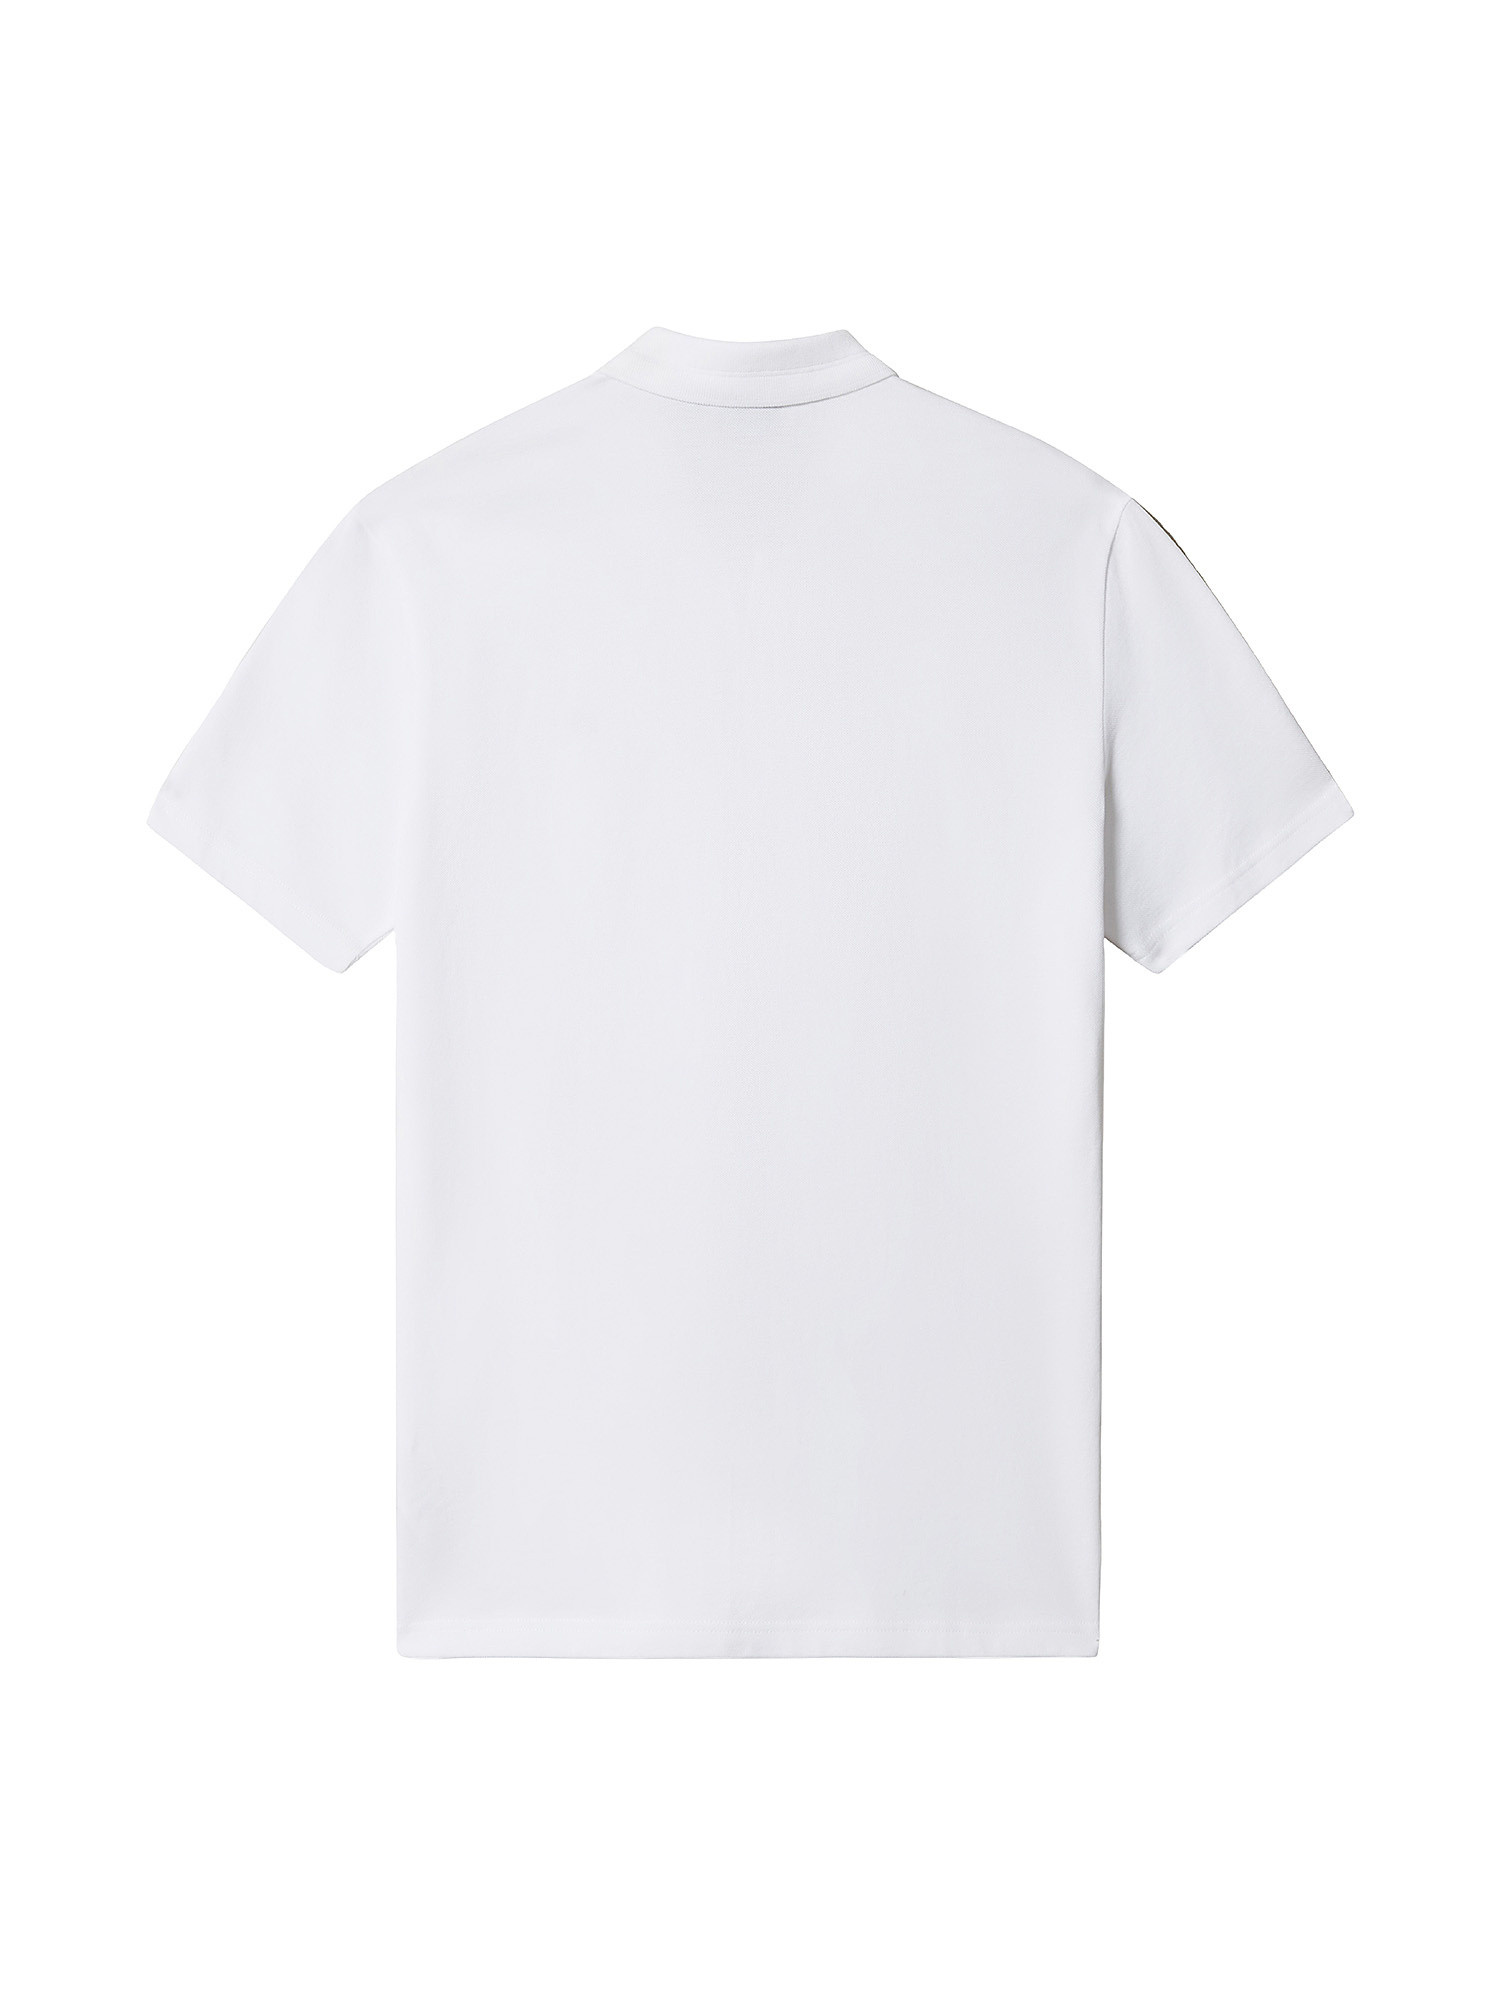 Short Sleeve Polo Ealis, White, large image number 1